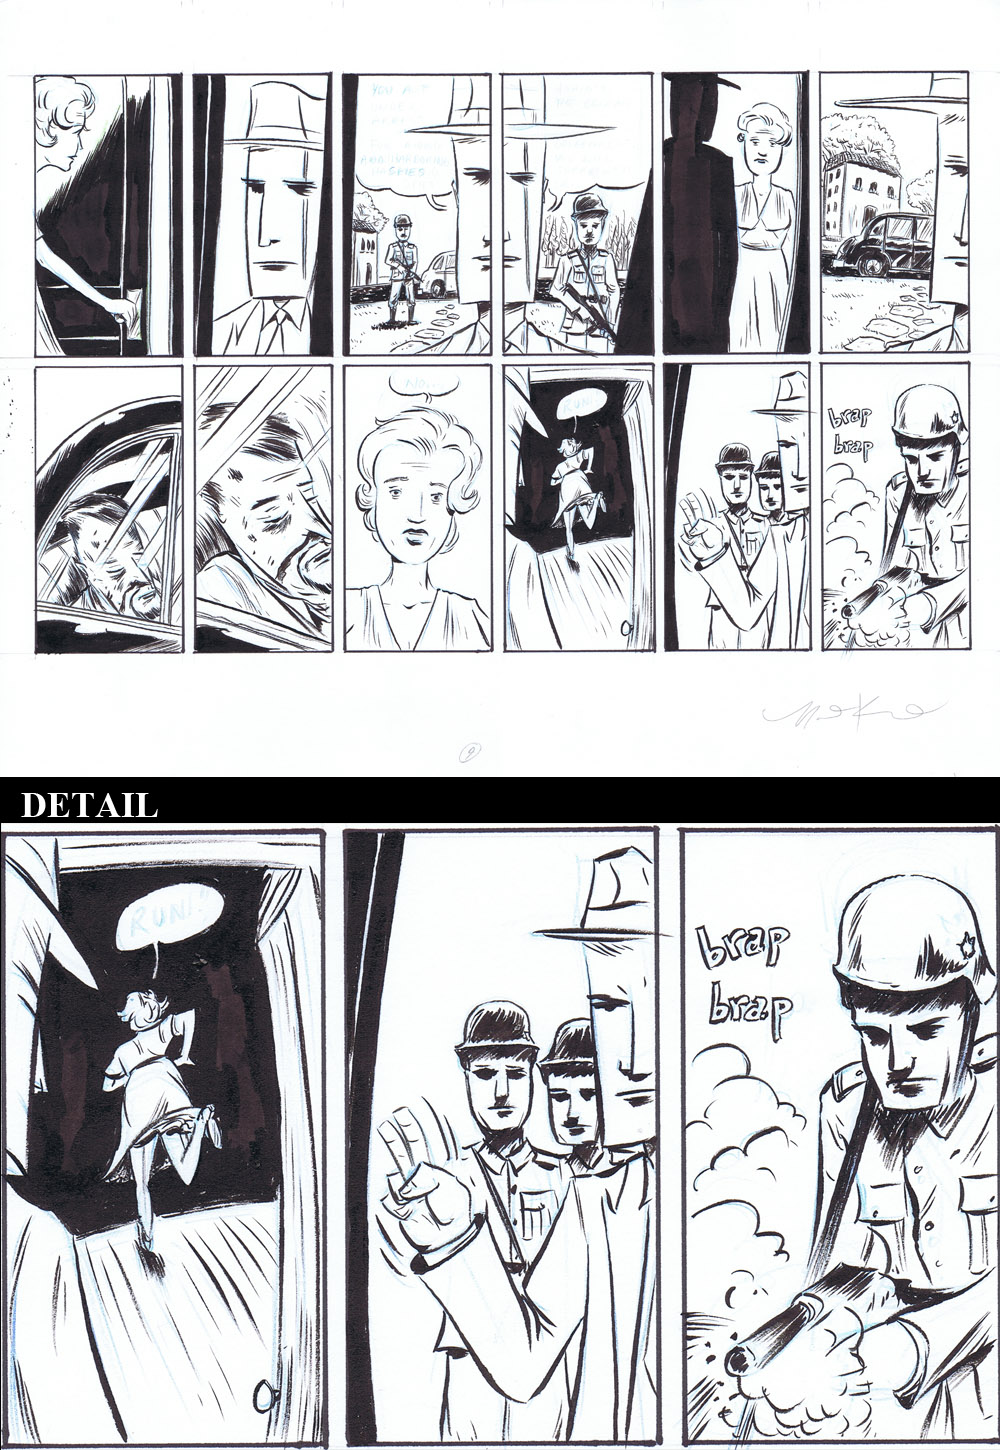 Super Spy - pages 17-18